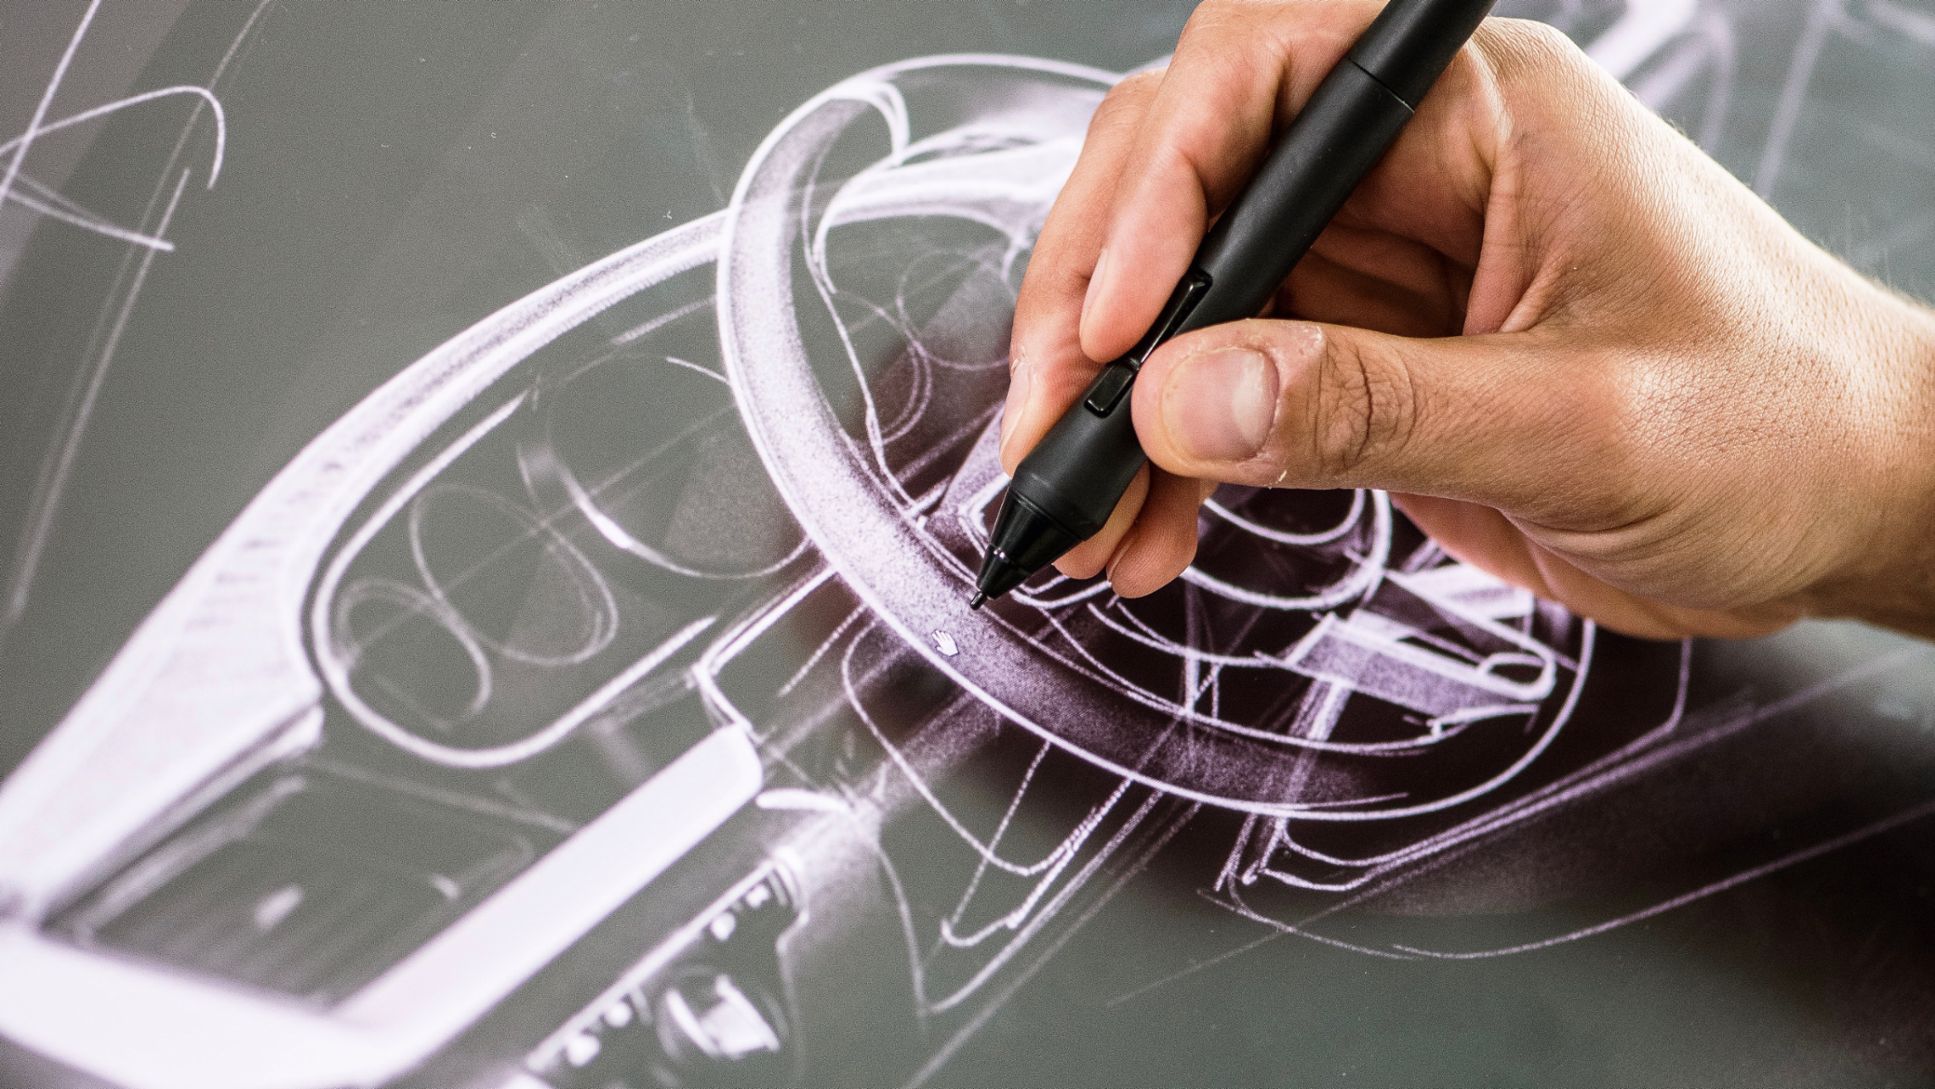 Porsche design process, 2020, Porsche AG